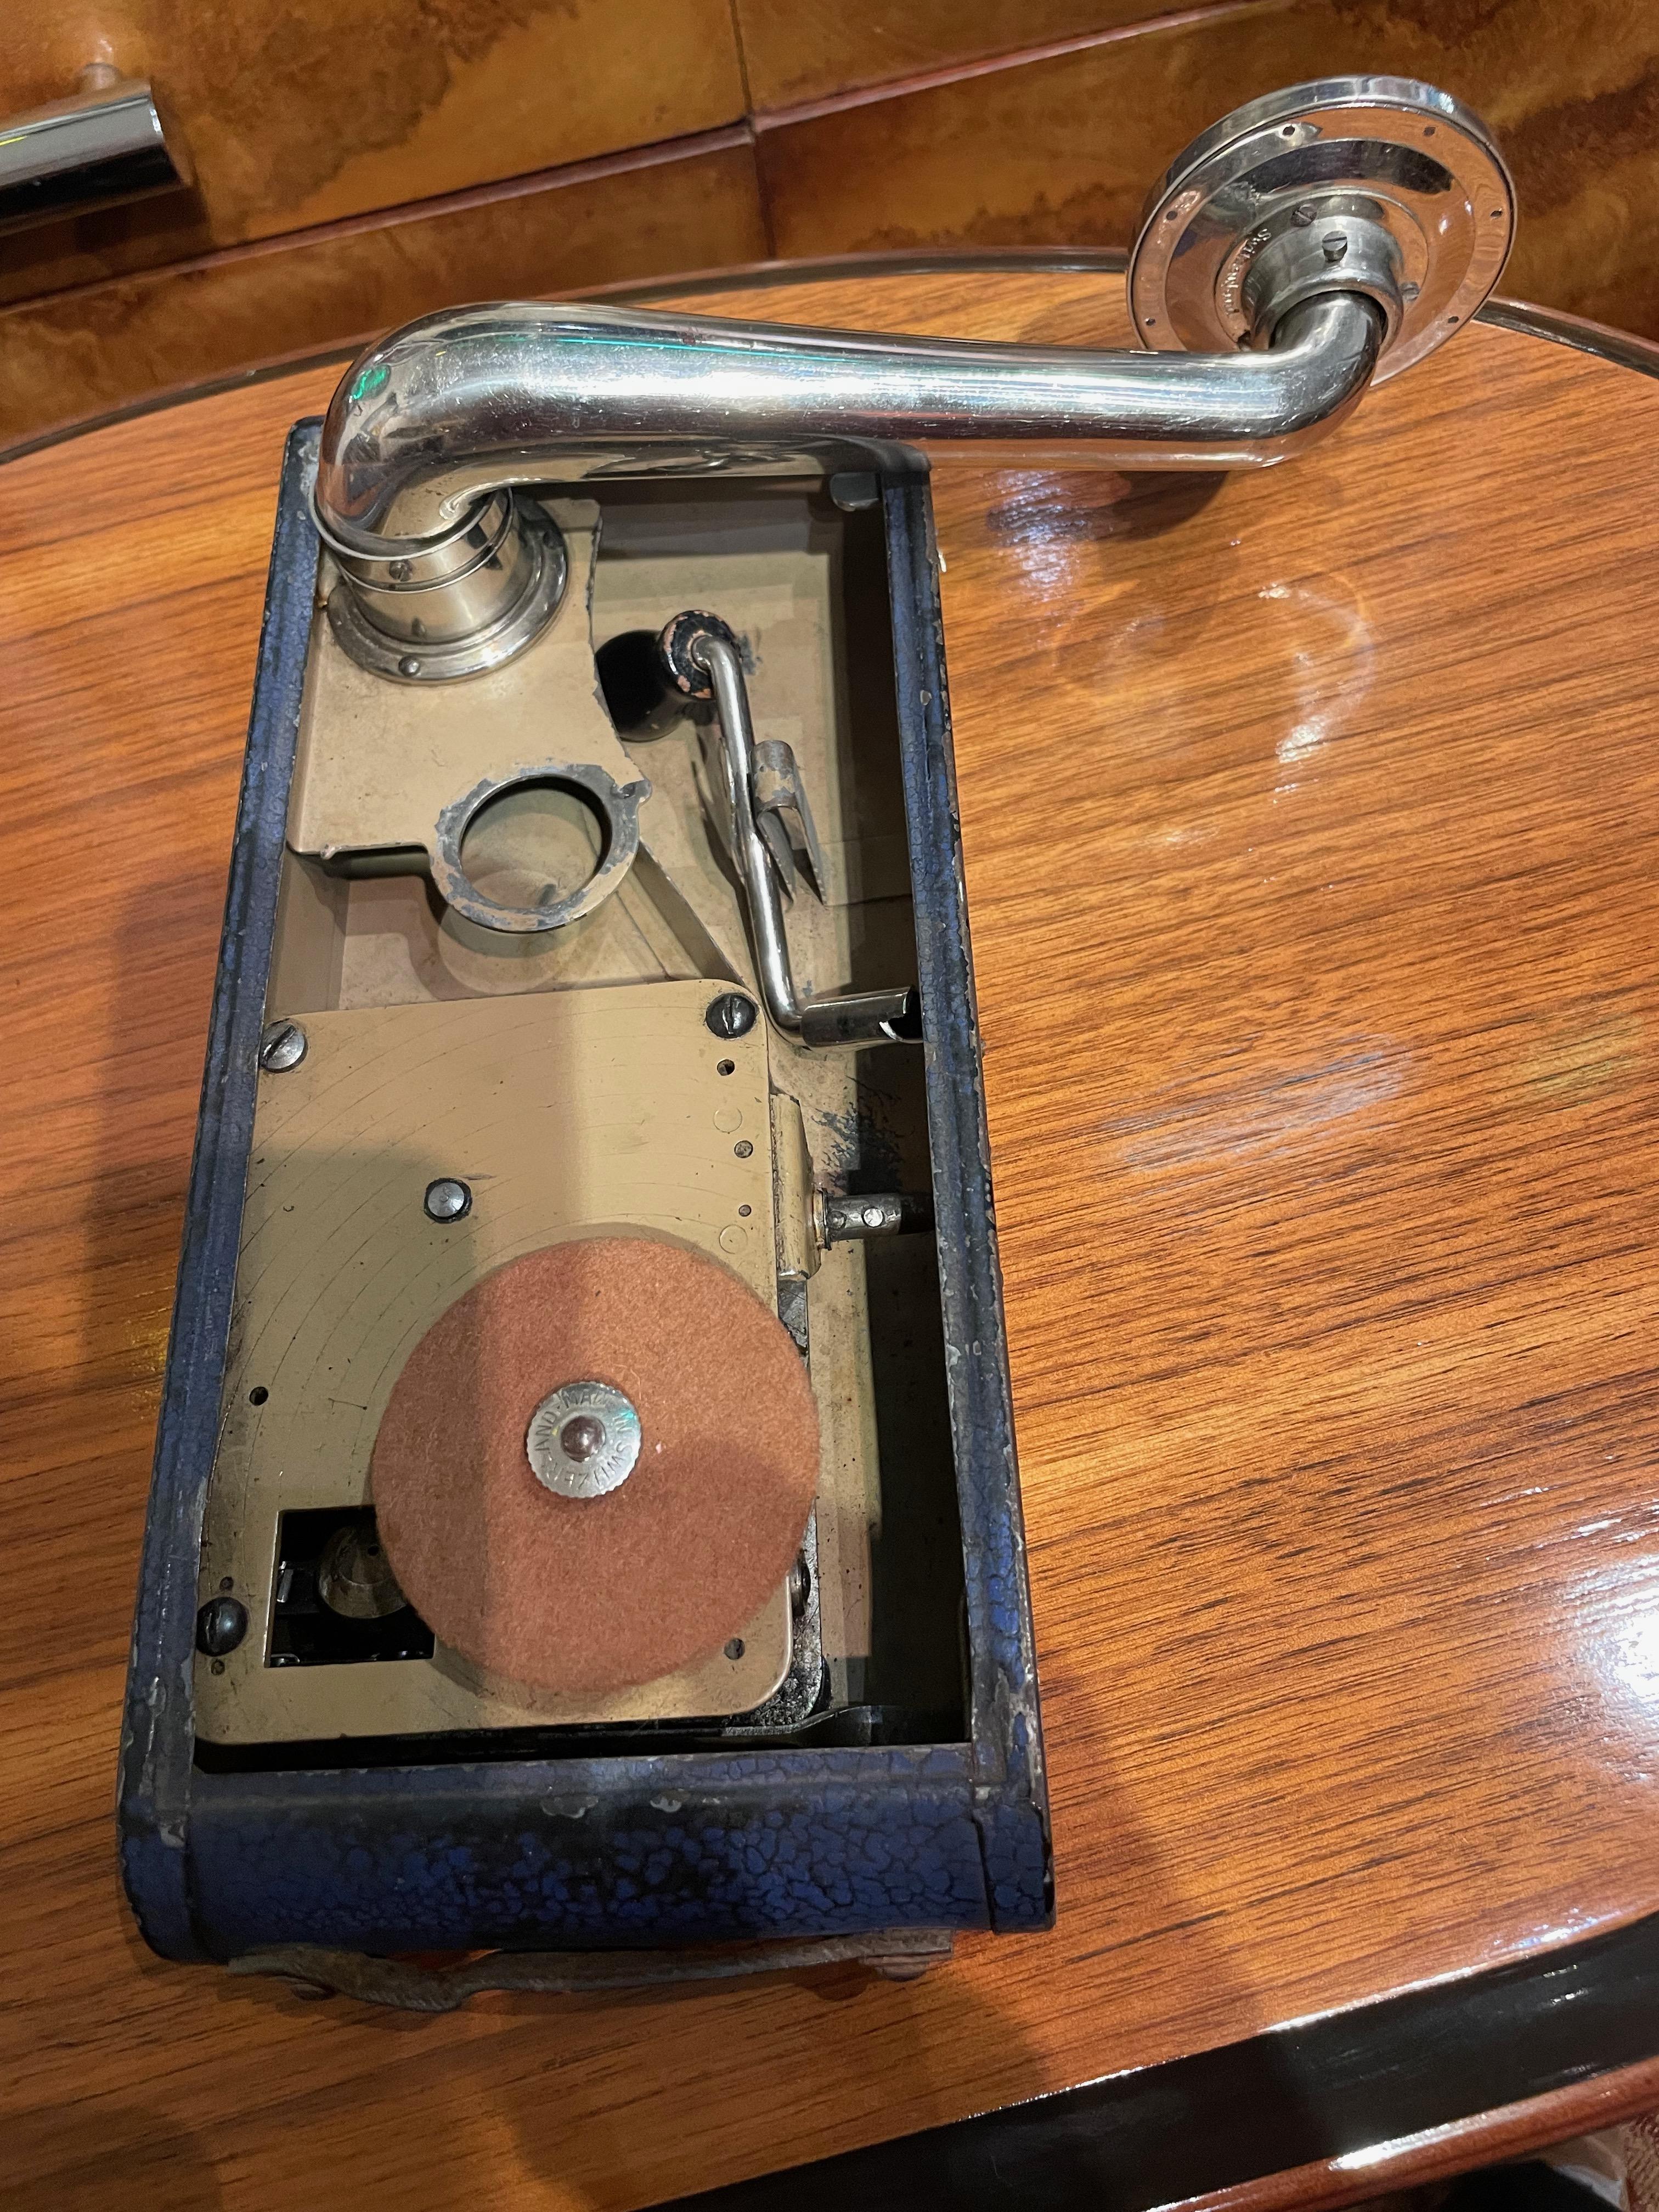 Il s'agit d'un authentique gramophone portable Excelda, le phonographe portable des années 1930 qui ressemblait aux appareils photo de poche de l'époque (généralement appelés 